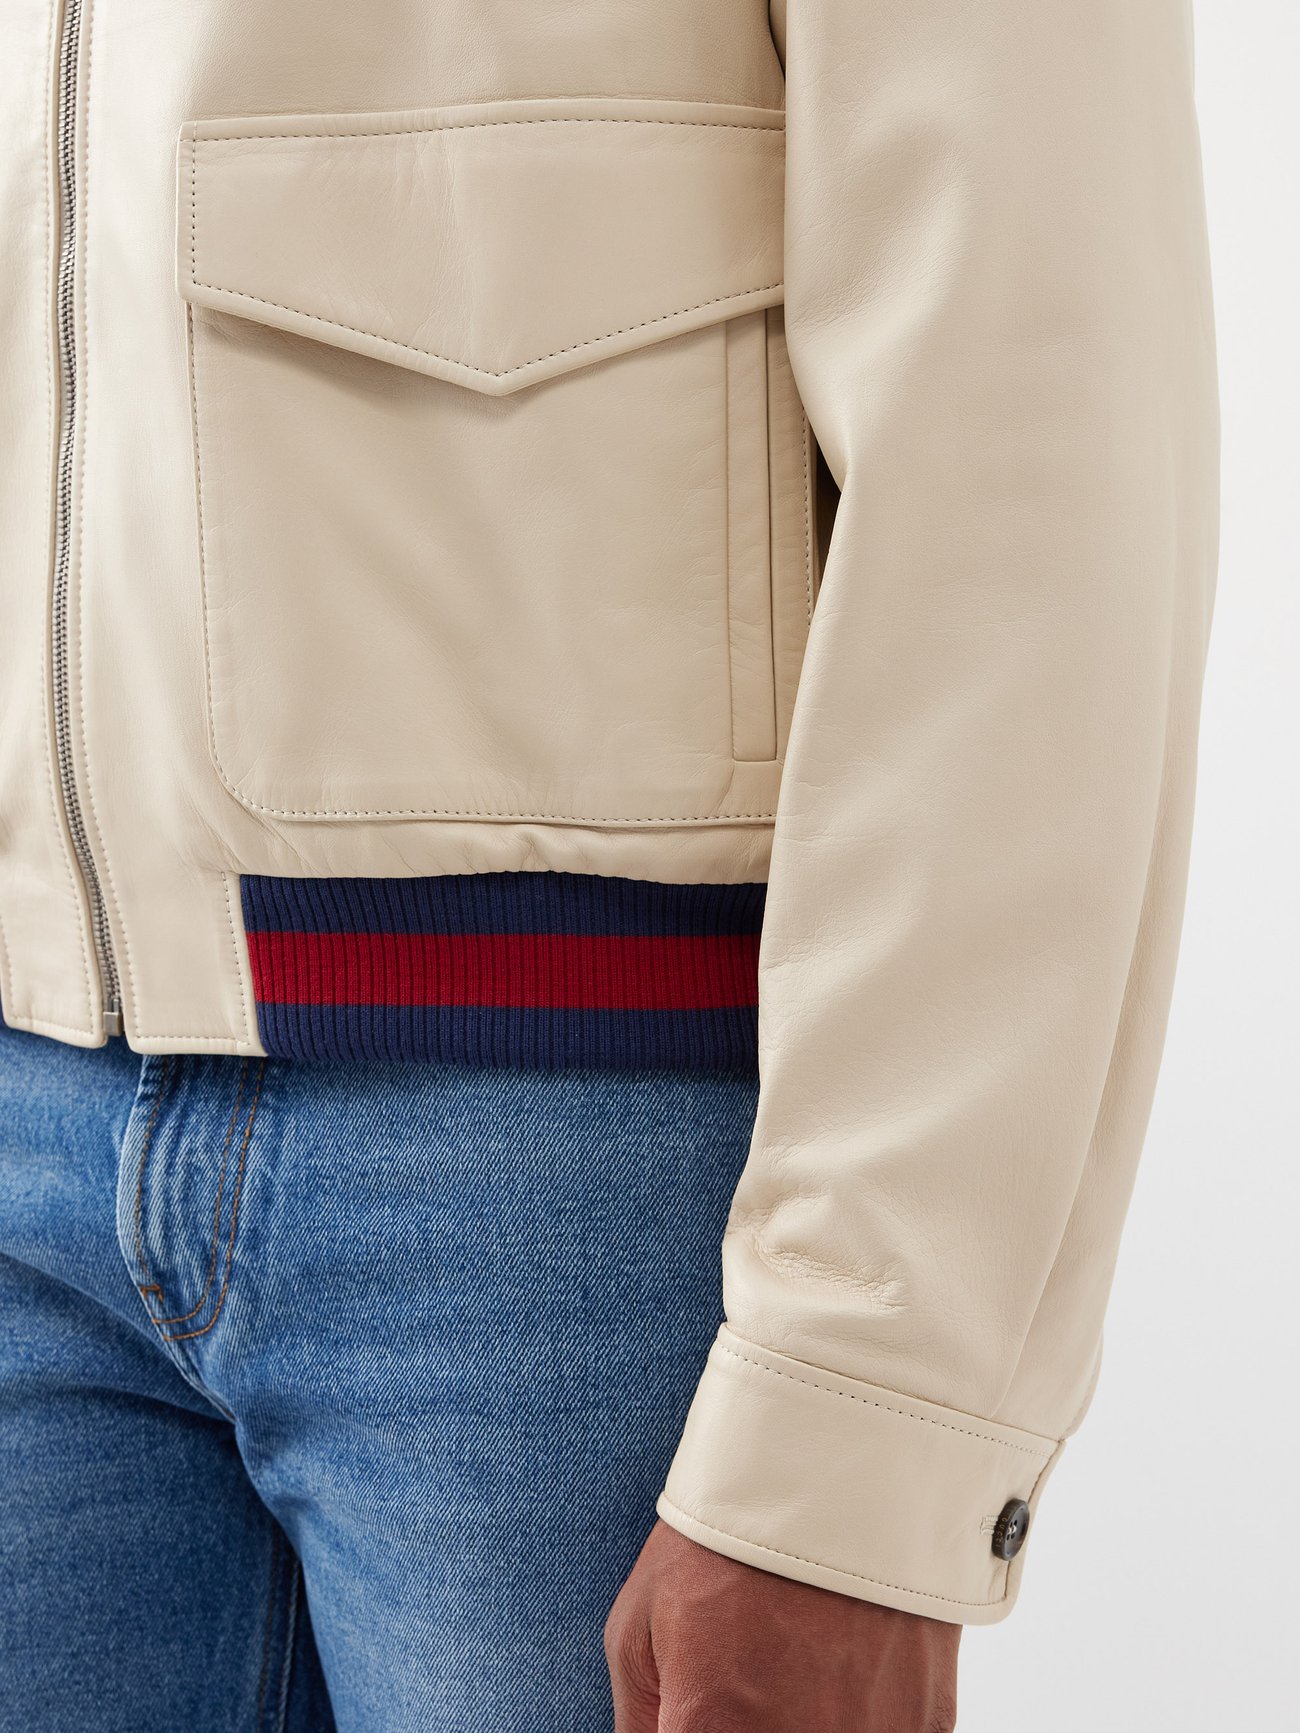 Beige Web-stripe leather jacket, Gucci